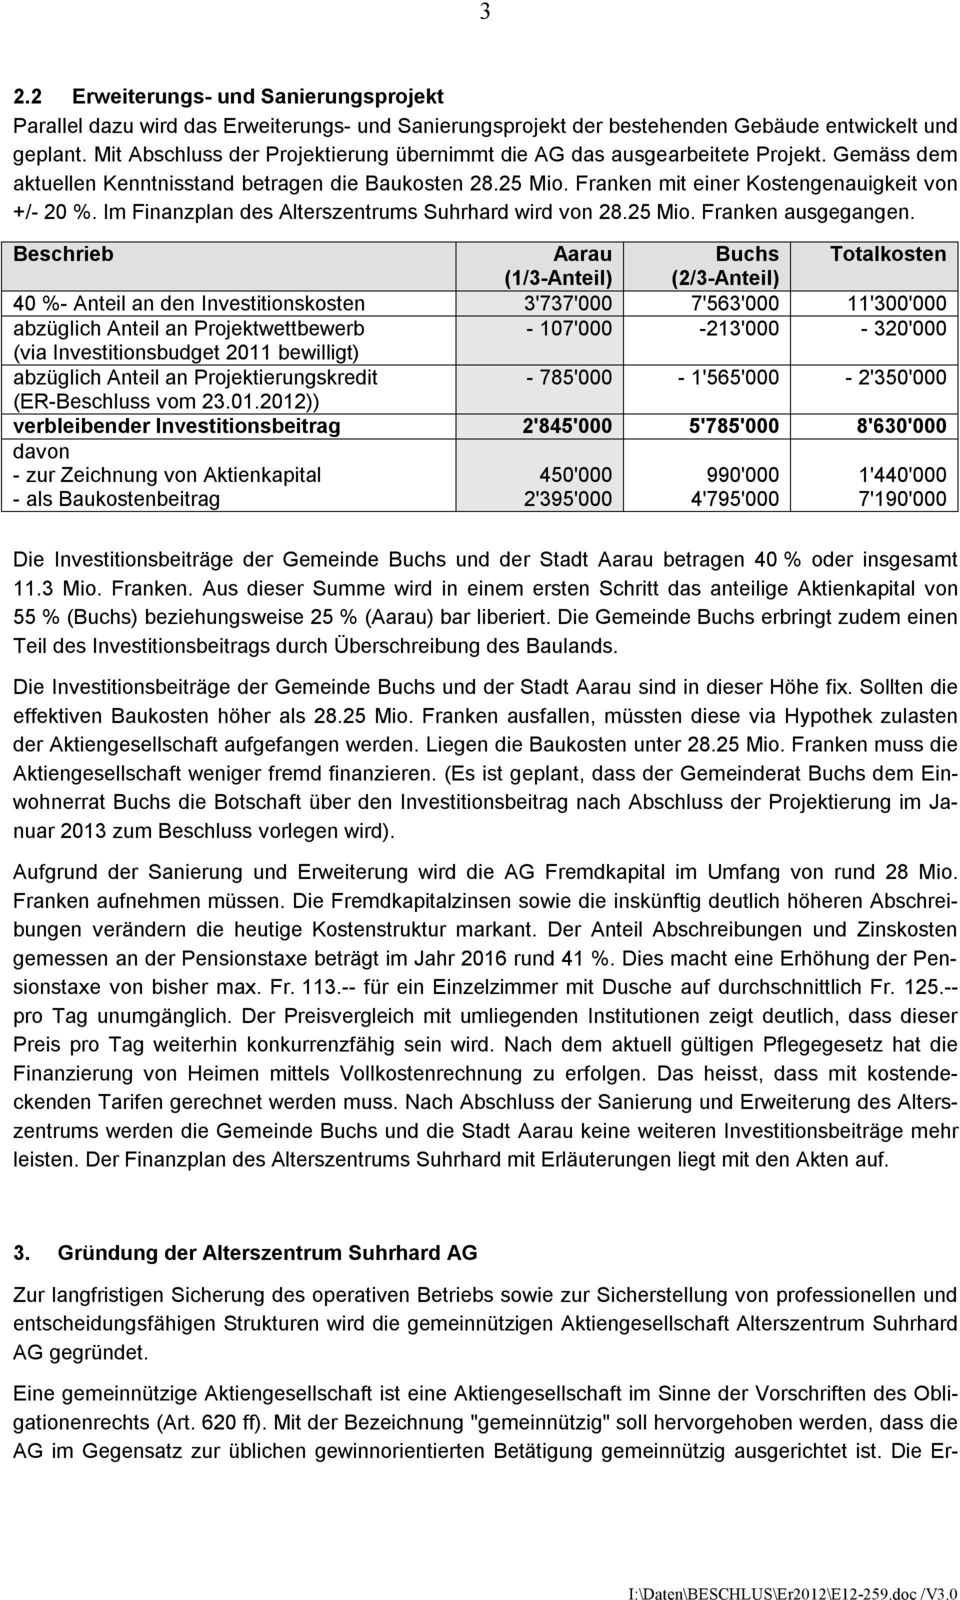 Im Finanzplan des Alterszentrums Suhrhard wird von 28.25 Mio. Franken ausgegangen.